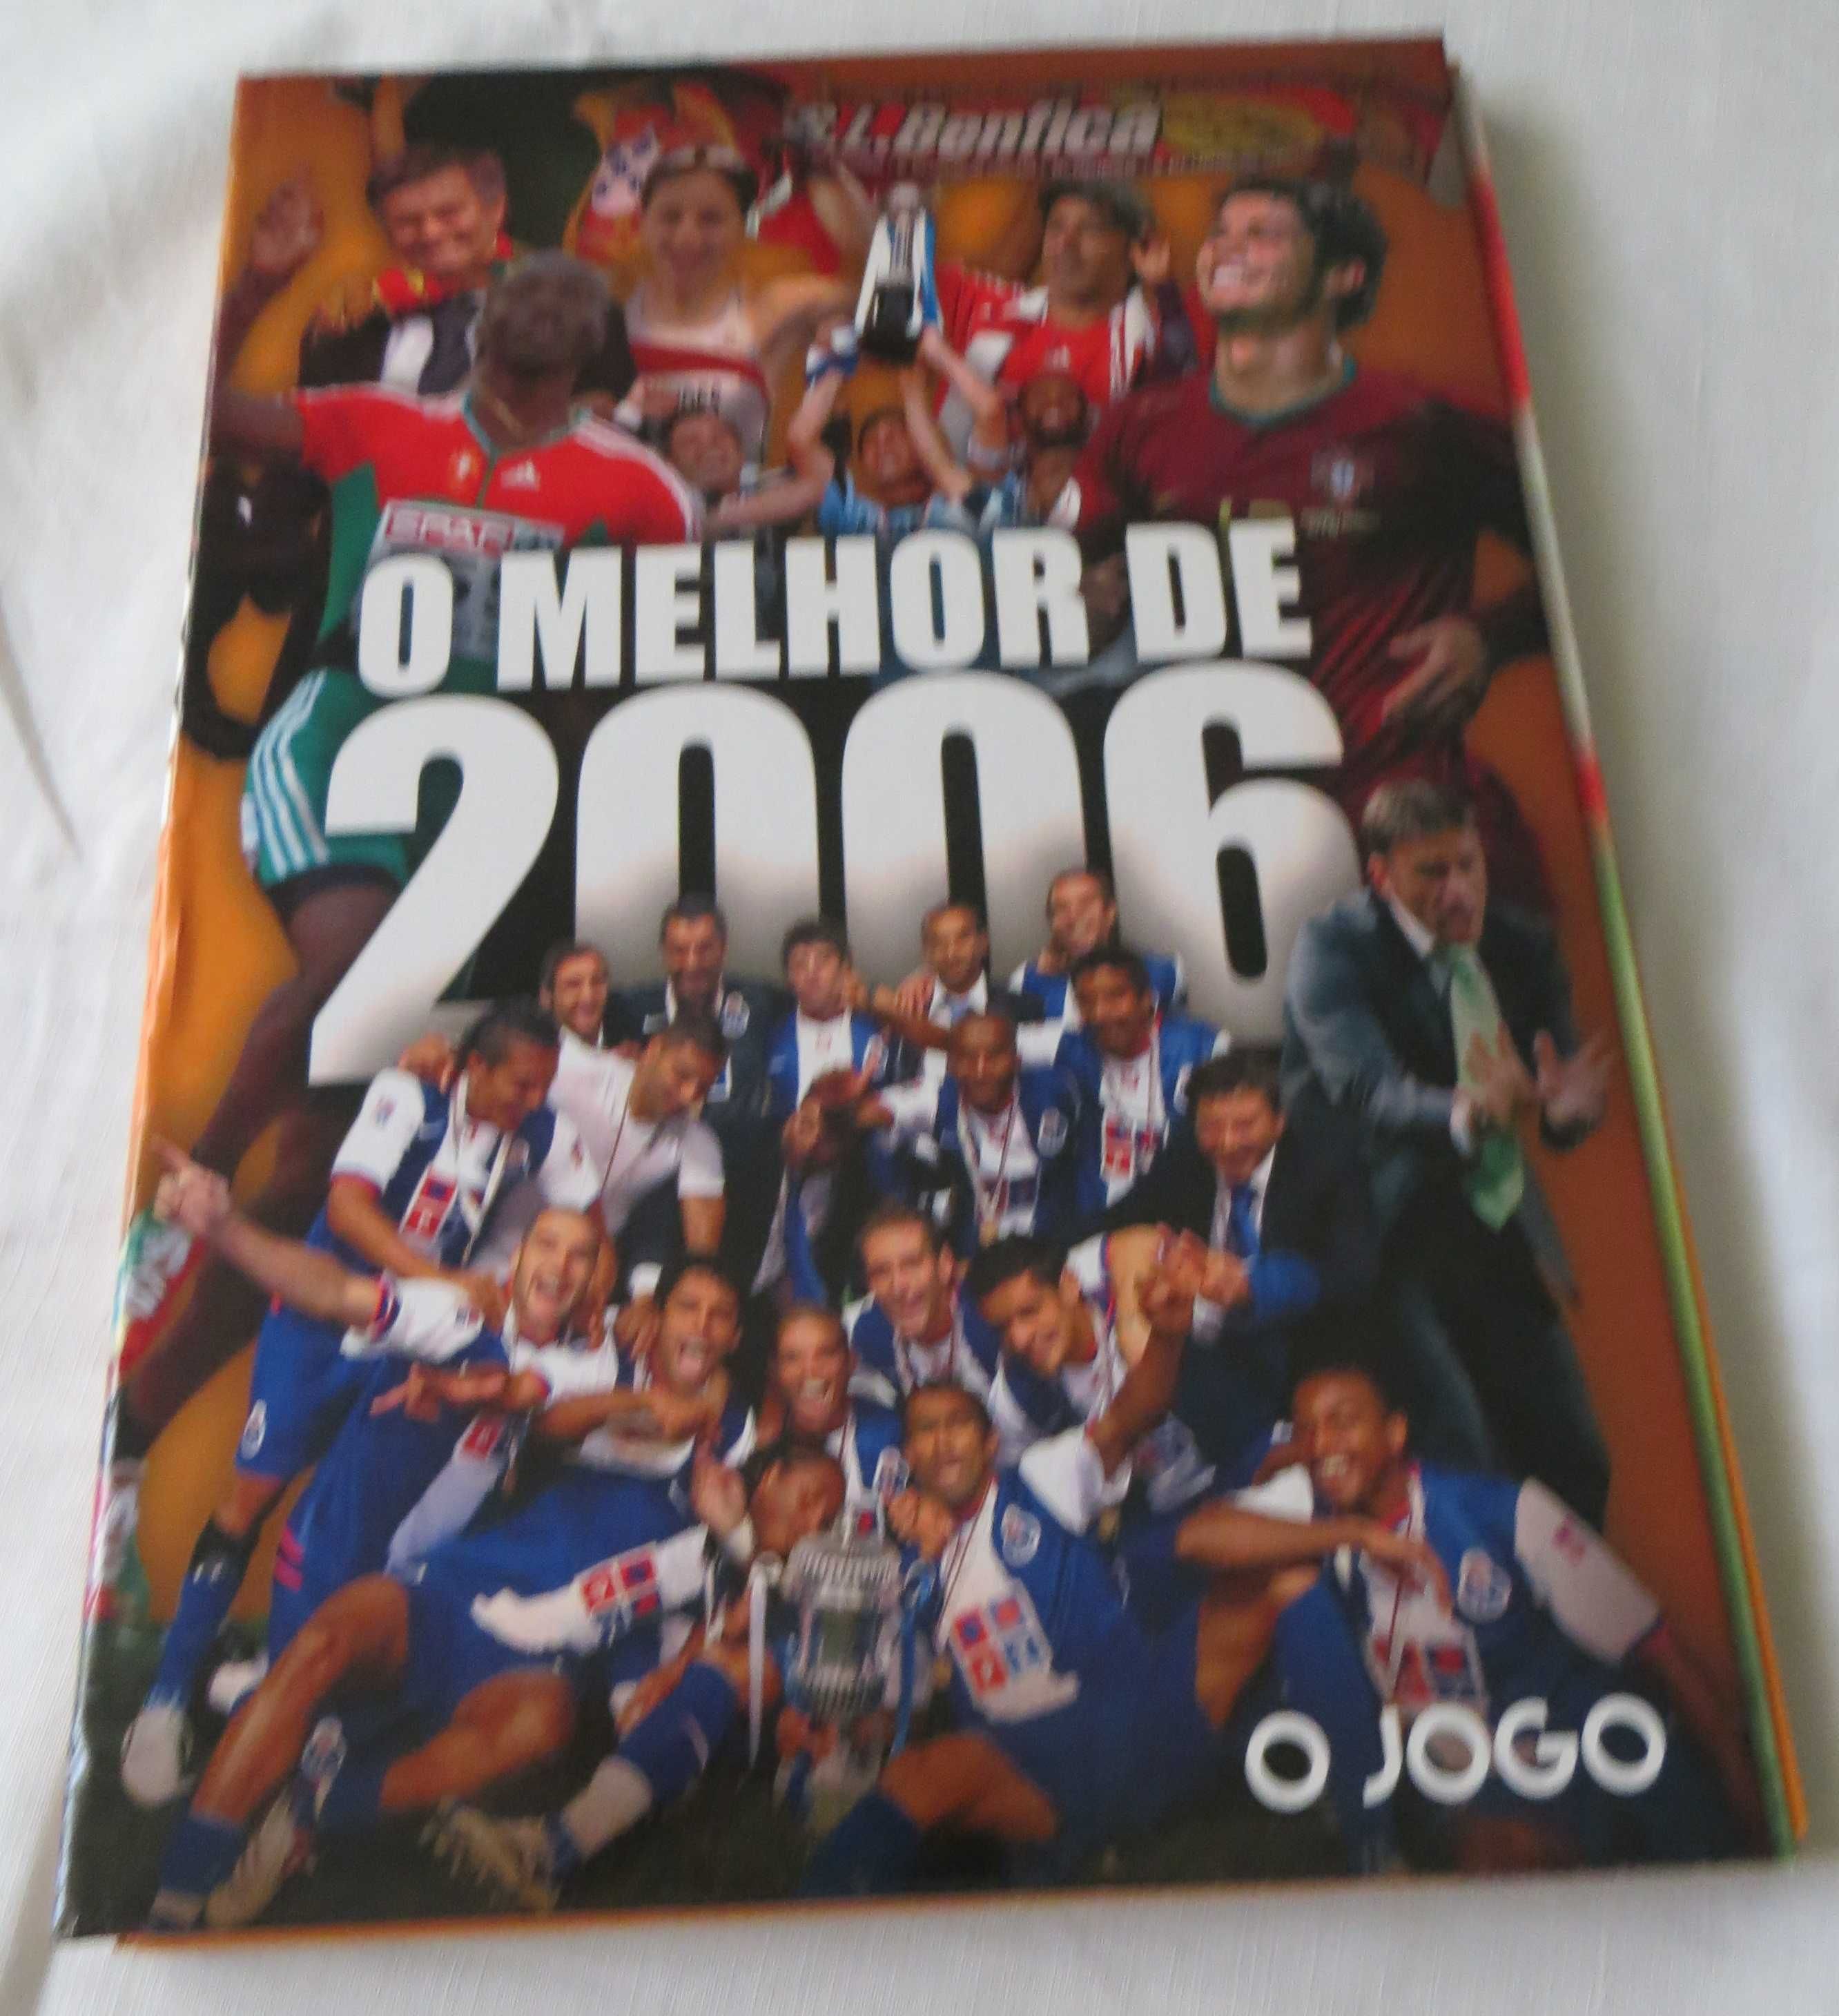 Livro "O Jogo" O melhor 2006 e Mundial de 2006